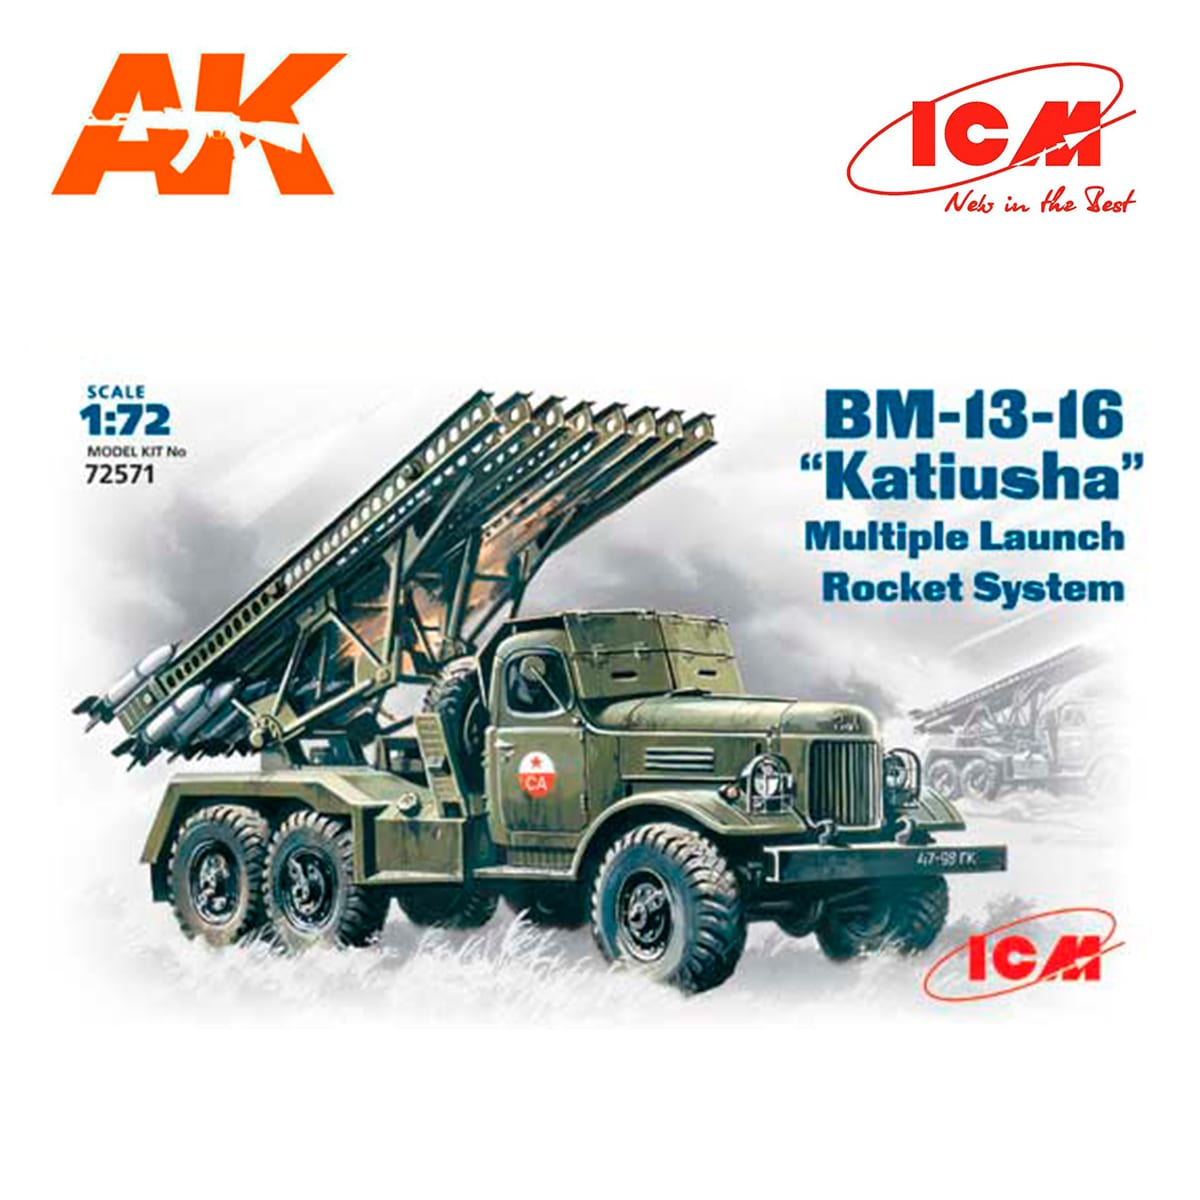 BM-13-16 “Katiusha”, Mult. Launch Rocket System on ZiL-157 base 1/72